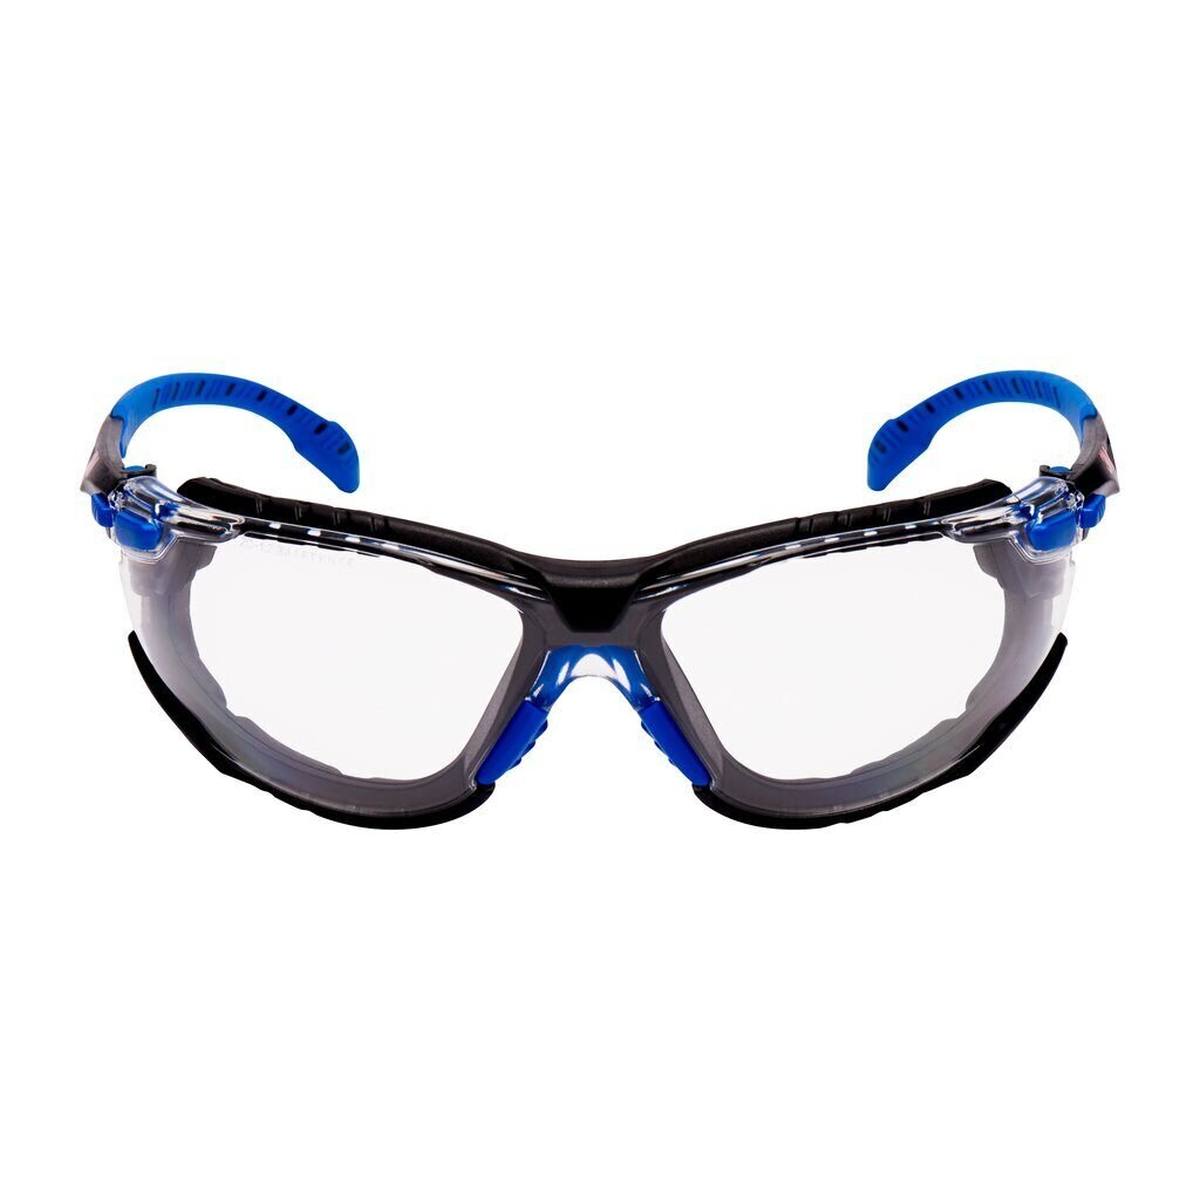 3M Solus 1000 Schutzbrille, blau/schwarze Bügel, Scotchgard Anti-Fog-/Antikratz-Beschichtung (K&N), transparente Scheibe, Schaumrahmen und Kopfband, S1101SGAFKT-EU